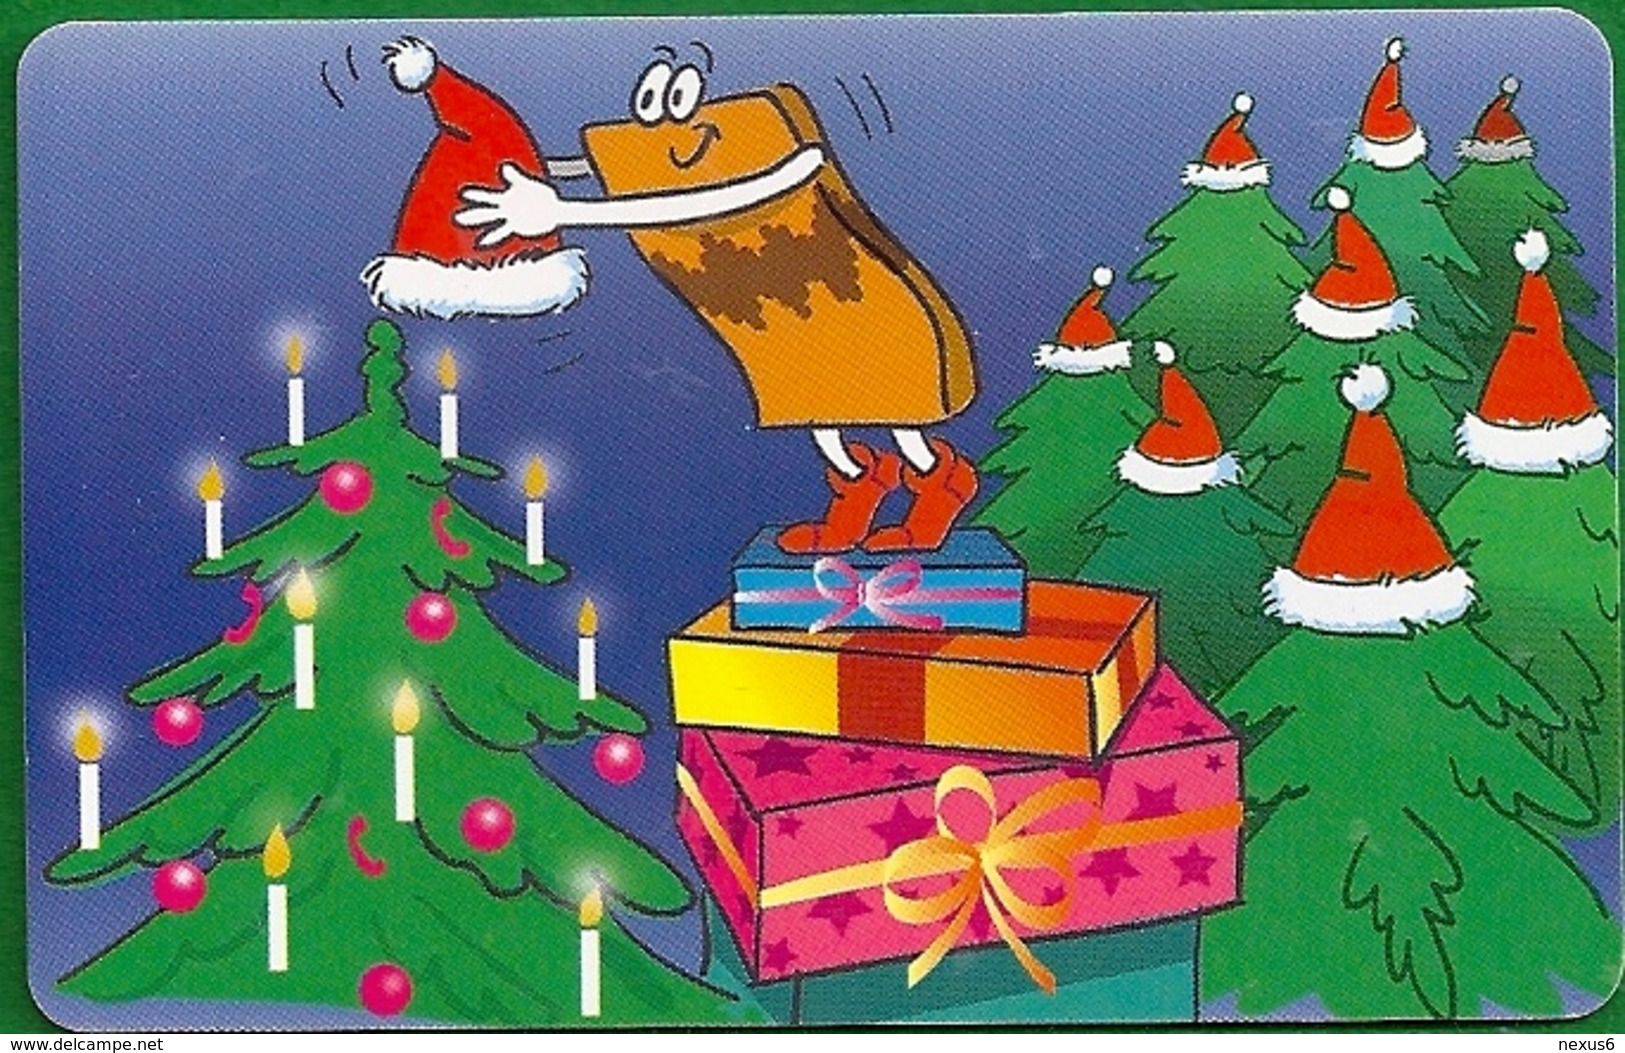 Germany - Die Lustigen Prepaid-Karten 6 - Christmas - M 03-10.2002 - 68.000ex, Used - M-Series : Merchandising